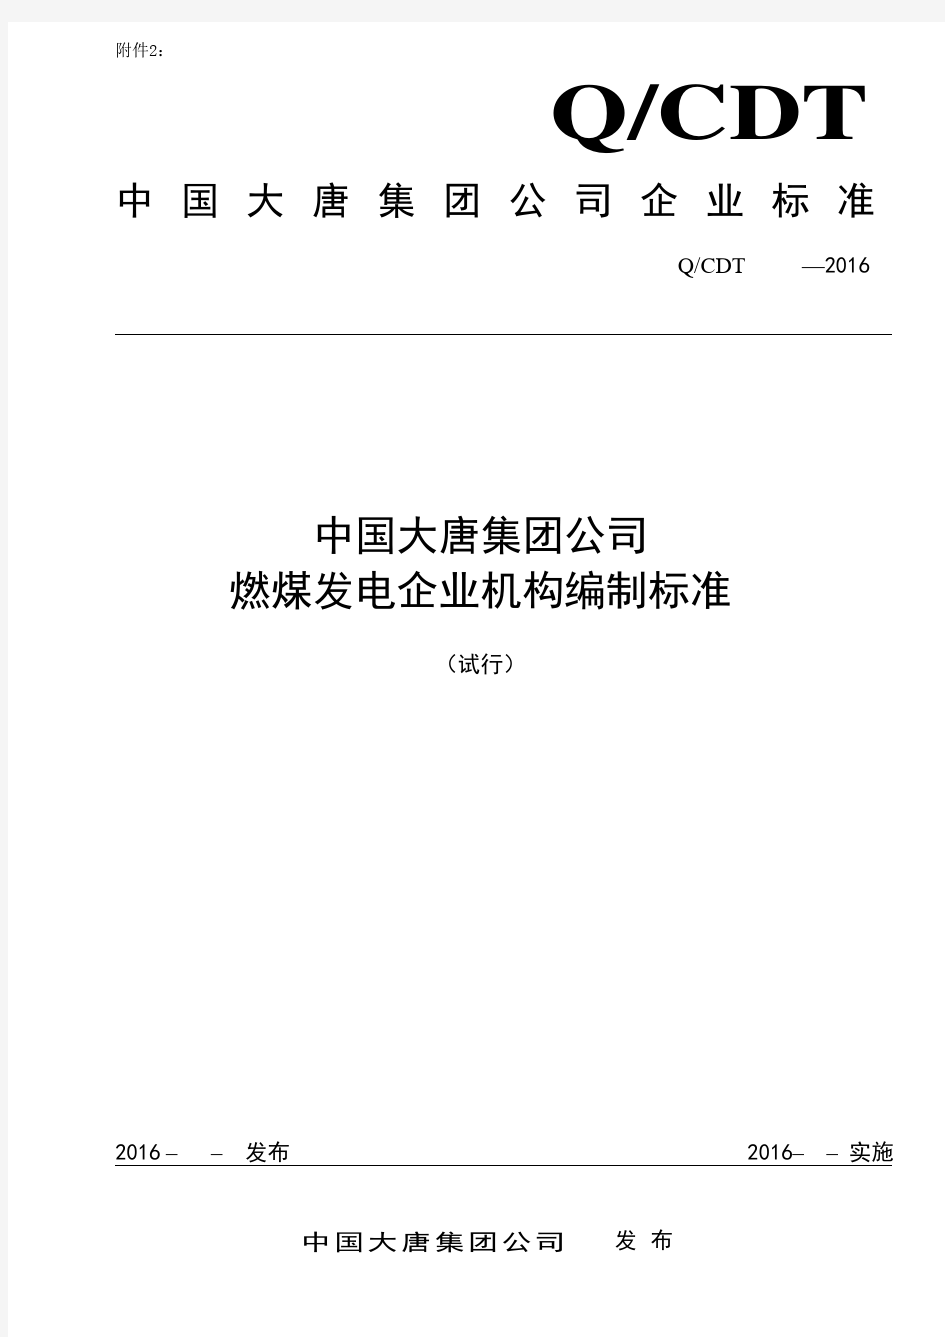 中国大唐集团公司燃煤发电企业机构编制标准2016(试行).全解